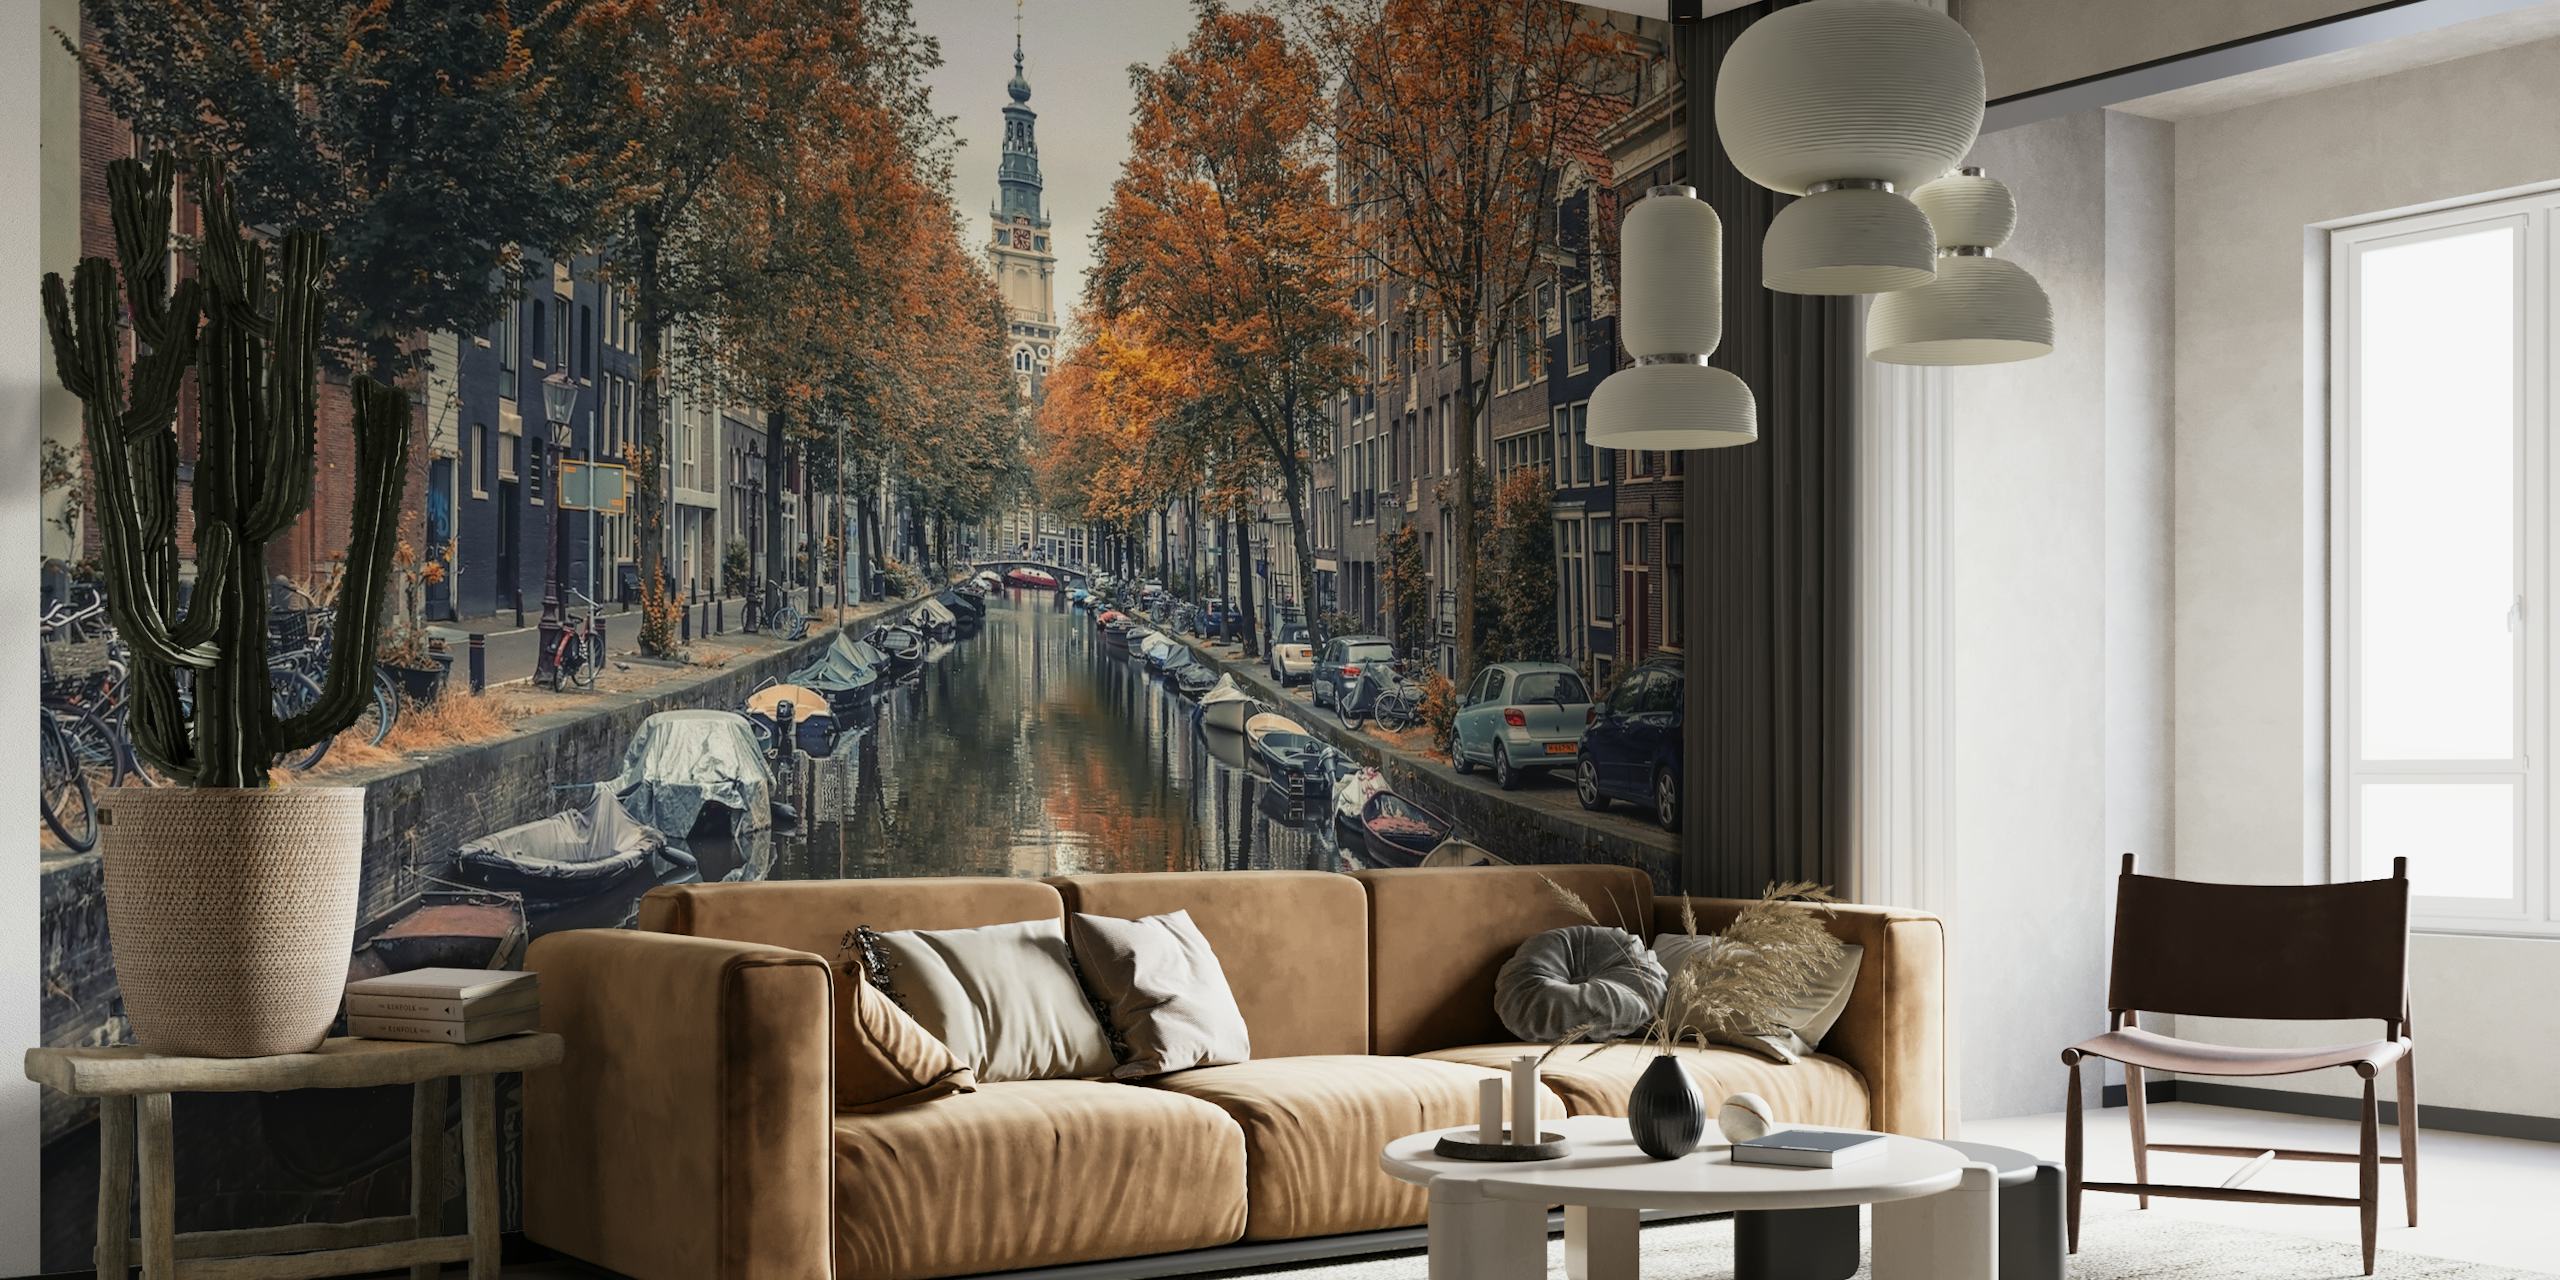 Kanäle von Amsterdam im Herbst mit orangefarbenen Blättern und historischen Gebäuden